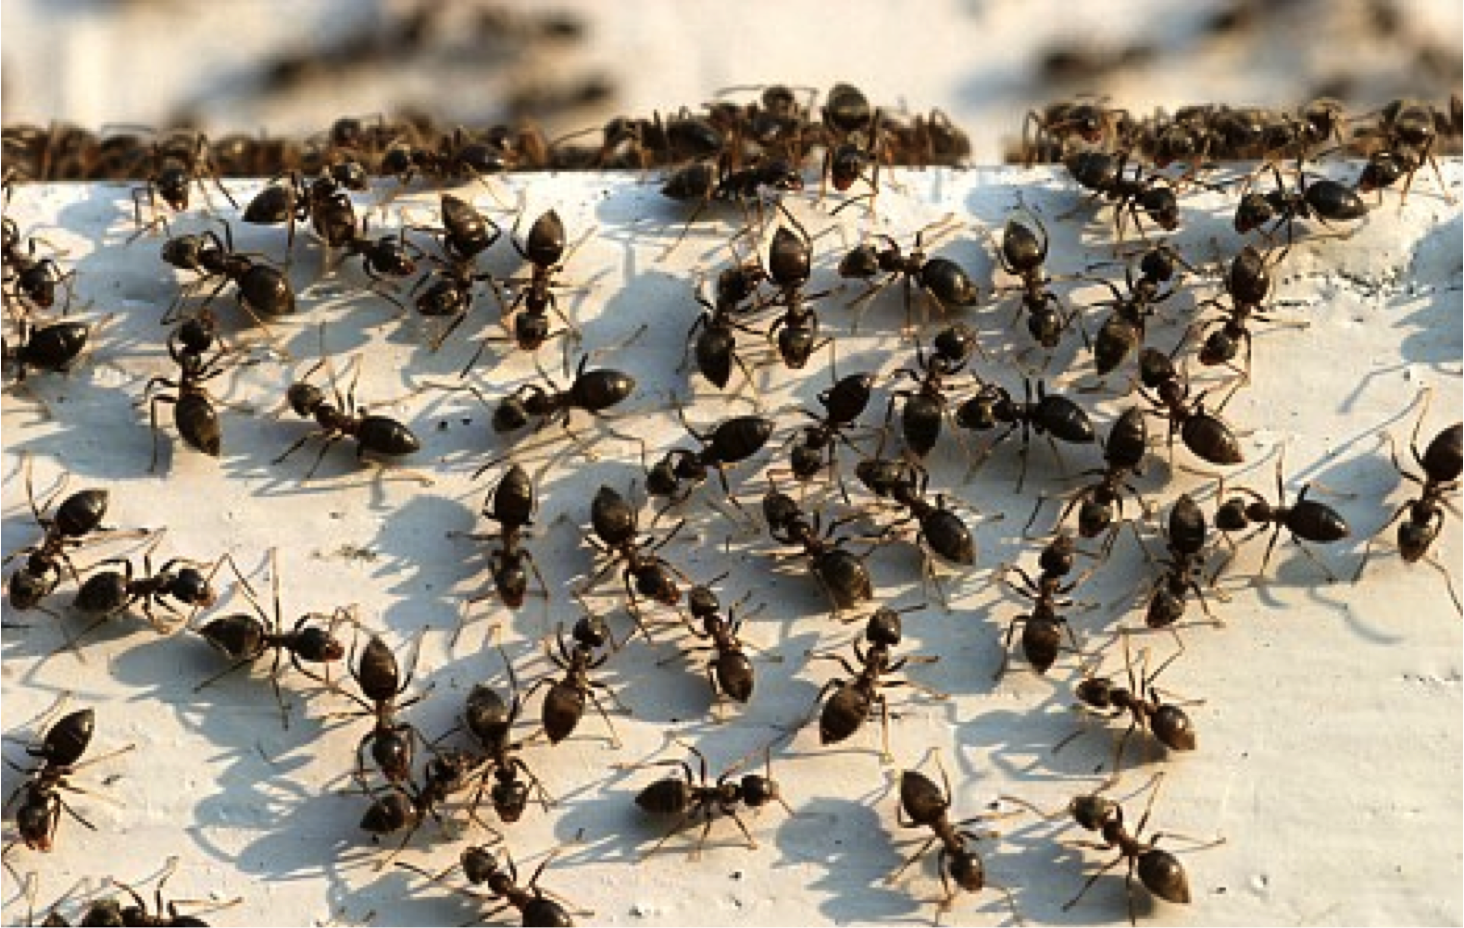 Куча муравьев. Очень много муравьев. Муравьи много. Стадо муравьев. Муравьи куча.